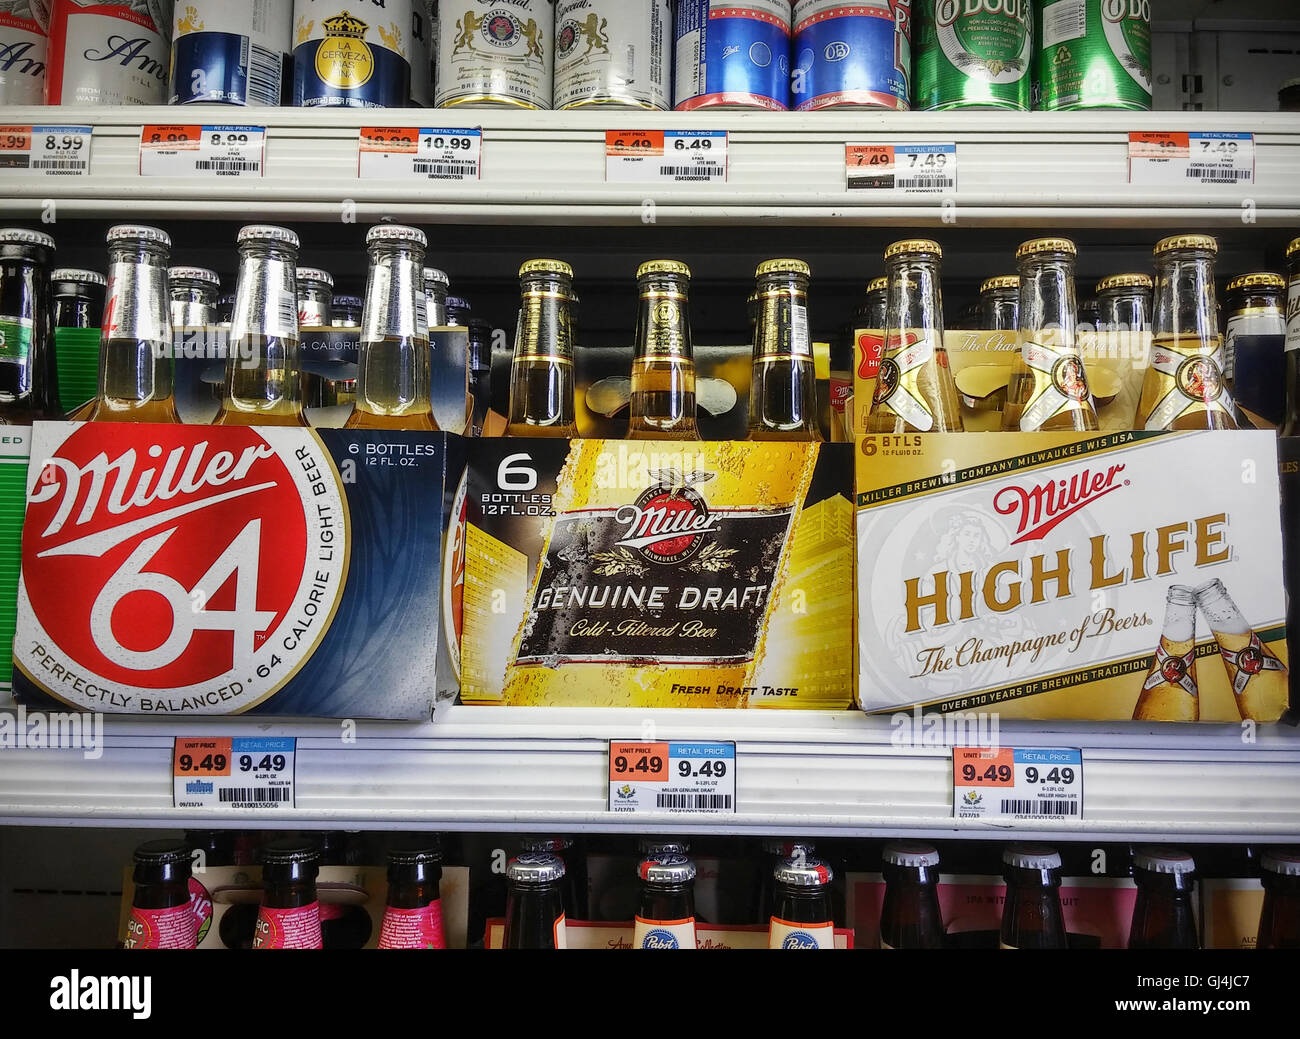 6-packs de différentes variétés de bière Miller sont vus dans un supermarché de New York le Mardi, Août 2, 2016. Molson Coors Brewing, dont l'unité est aux États-Unis, a enregistré des revenus que MillerCoors a manqué aux attentes des analystes en invoquant l'intérêt des consommateurs pour des cocktails et de la bière artisanale. (© Richard B. Levine) Banque D'Images